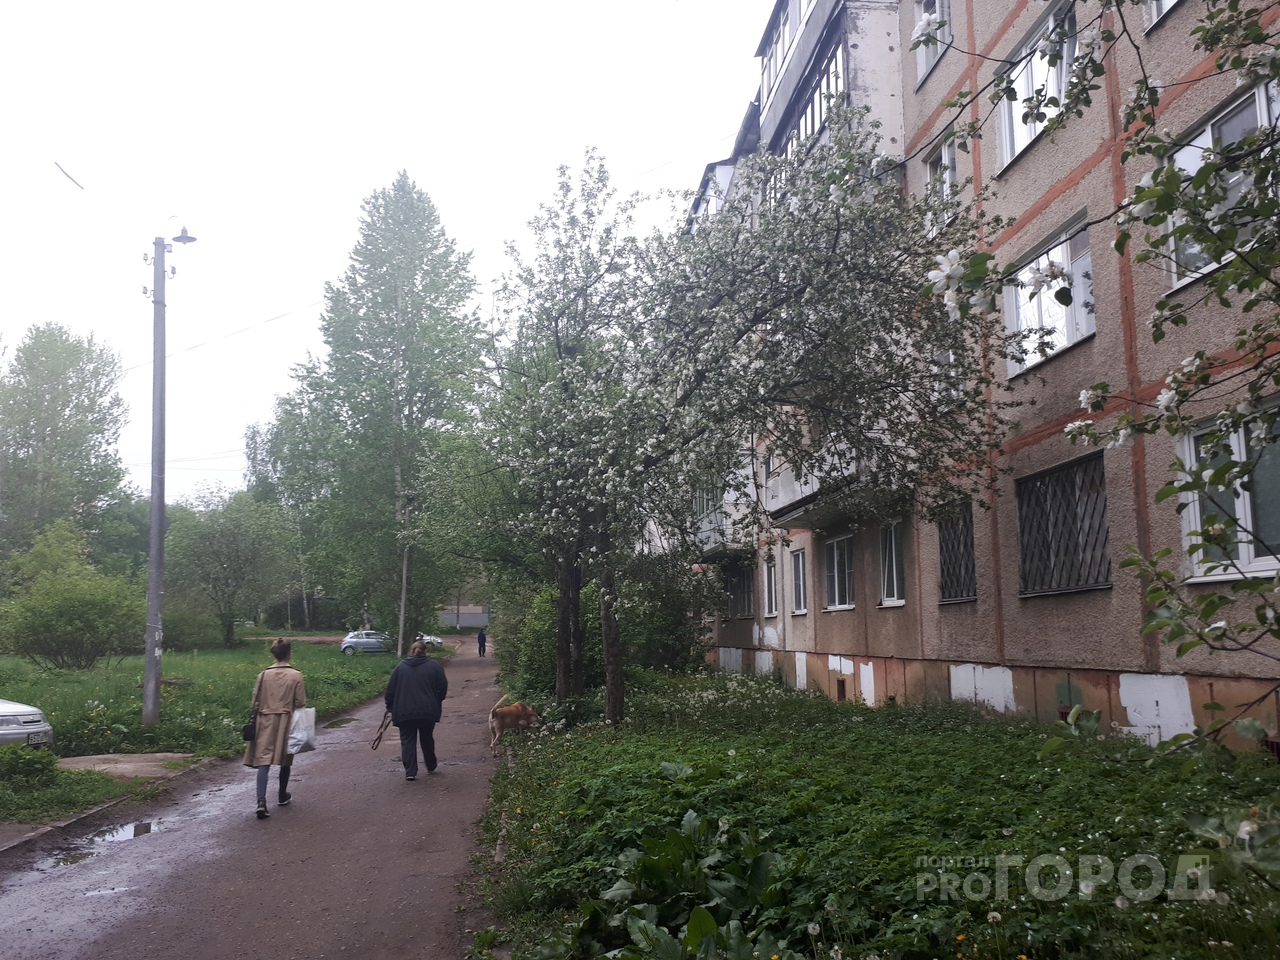 Однушка за полмиллиона: топ-5 самых дешевых квартир в Ярославле